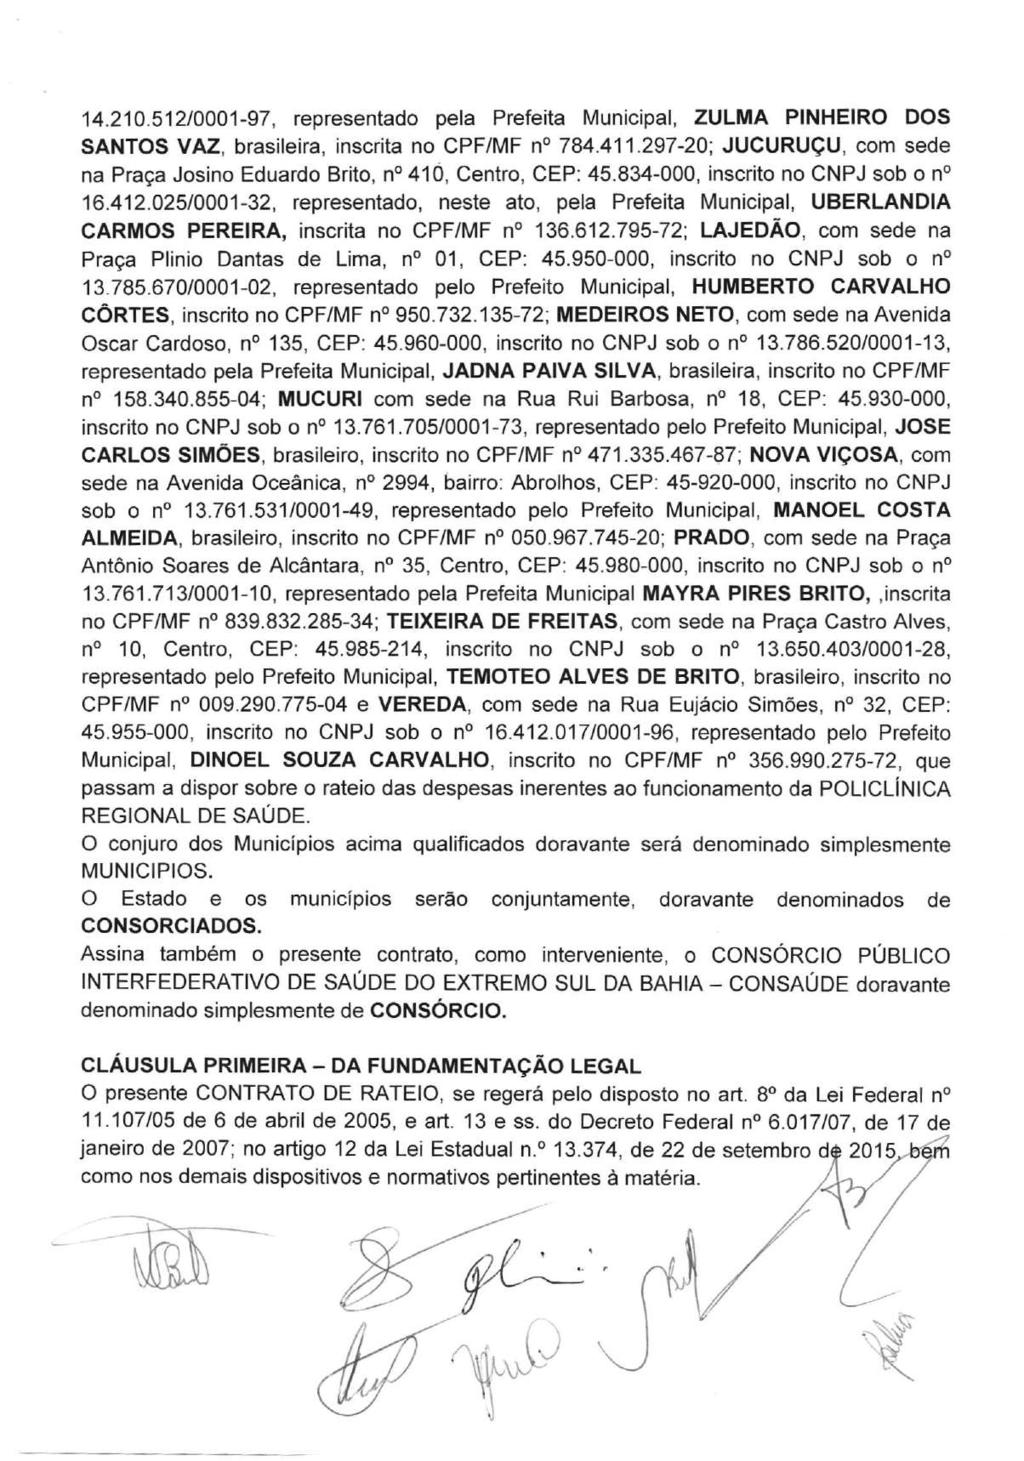 14.210.512/0001-97, representado pela Prefeita Municipal, ZULMA PINHEIRO DOS SANTOS VAZ, brasileira, inscrita no CPF/MF n 784.411.